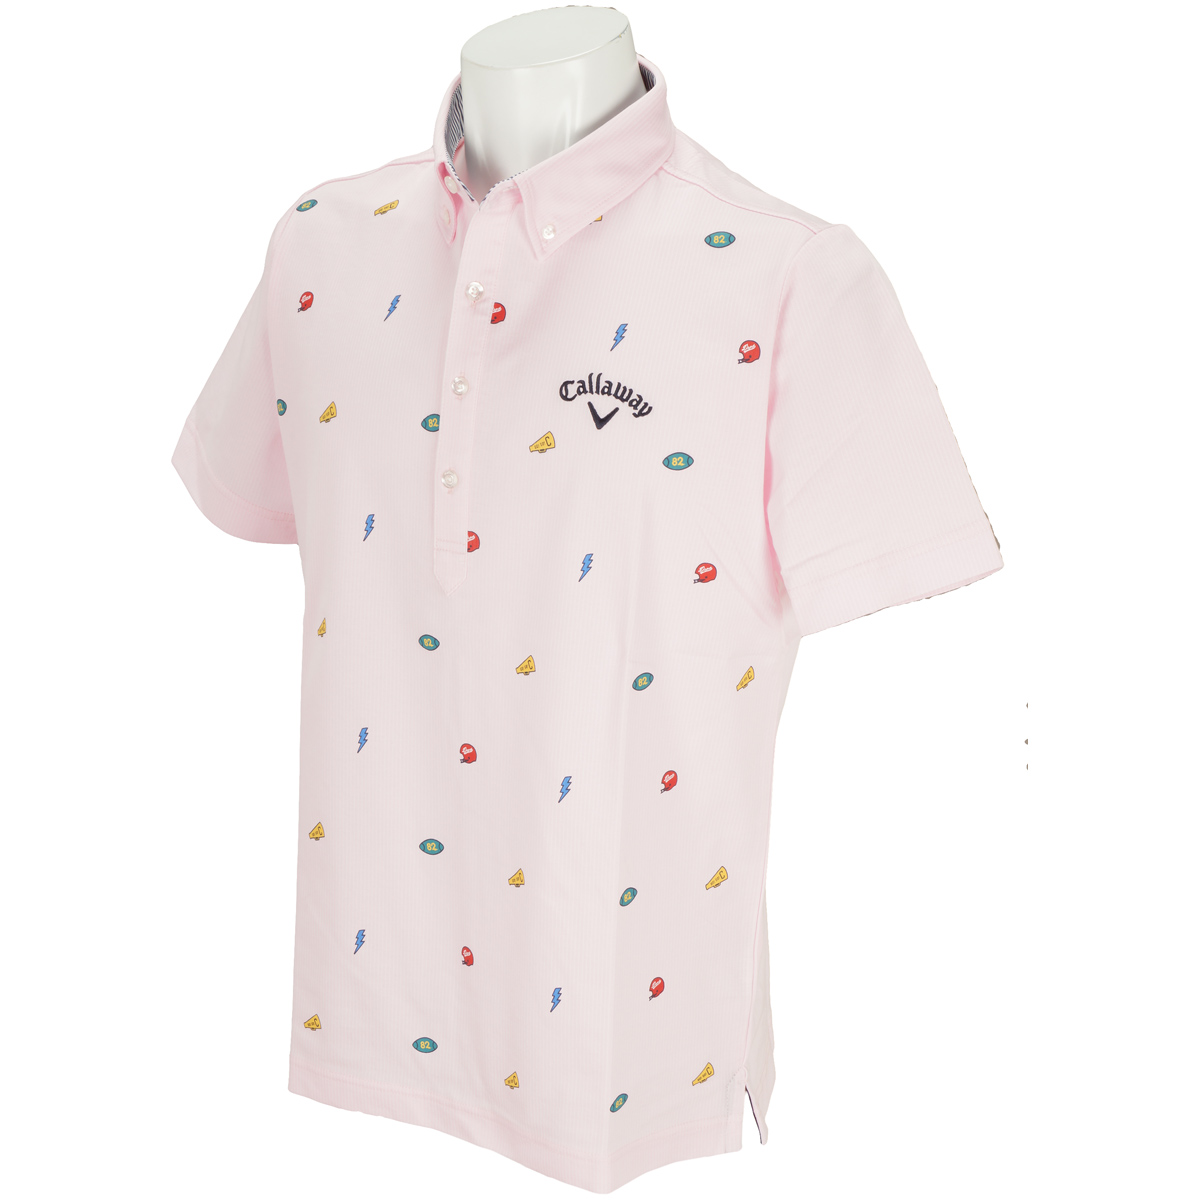  モチーフプリントカットストライプボタンダウンカラー半袖ポロシャツ 